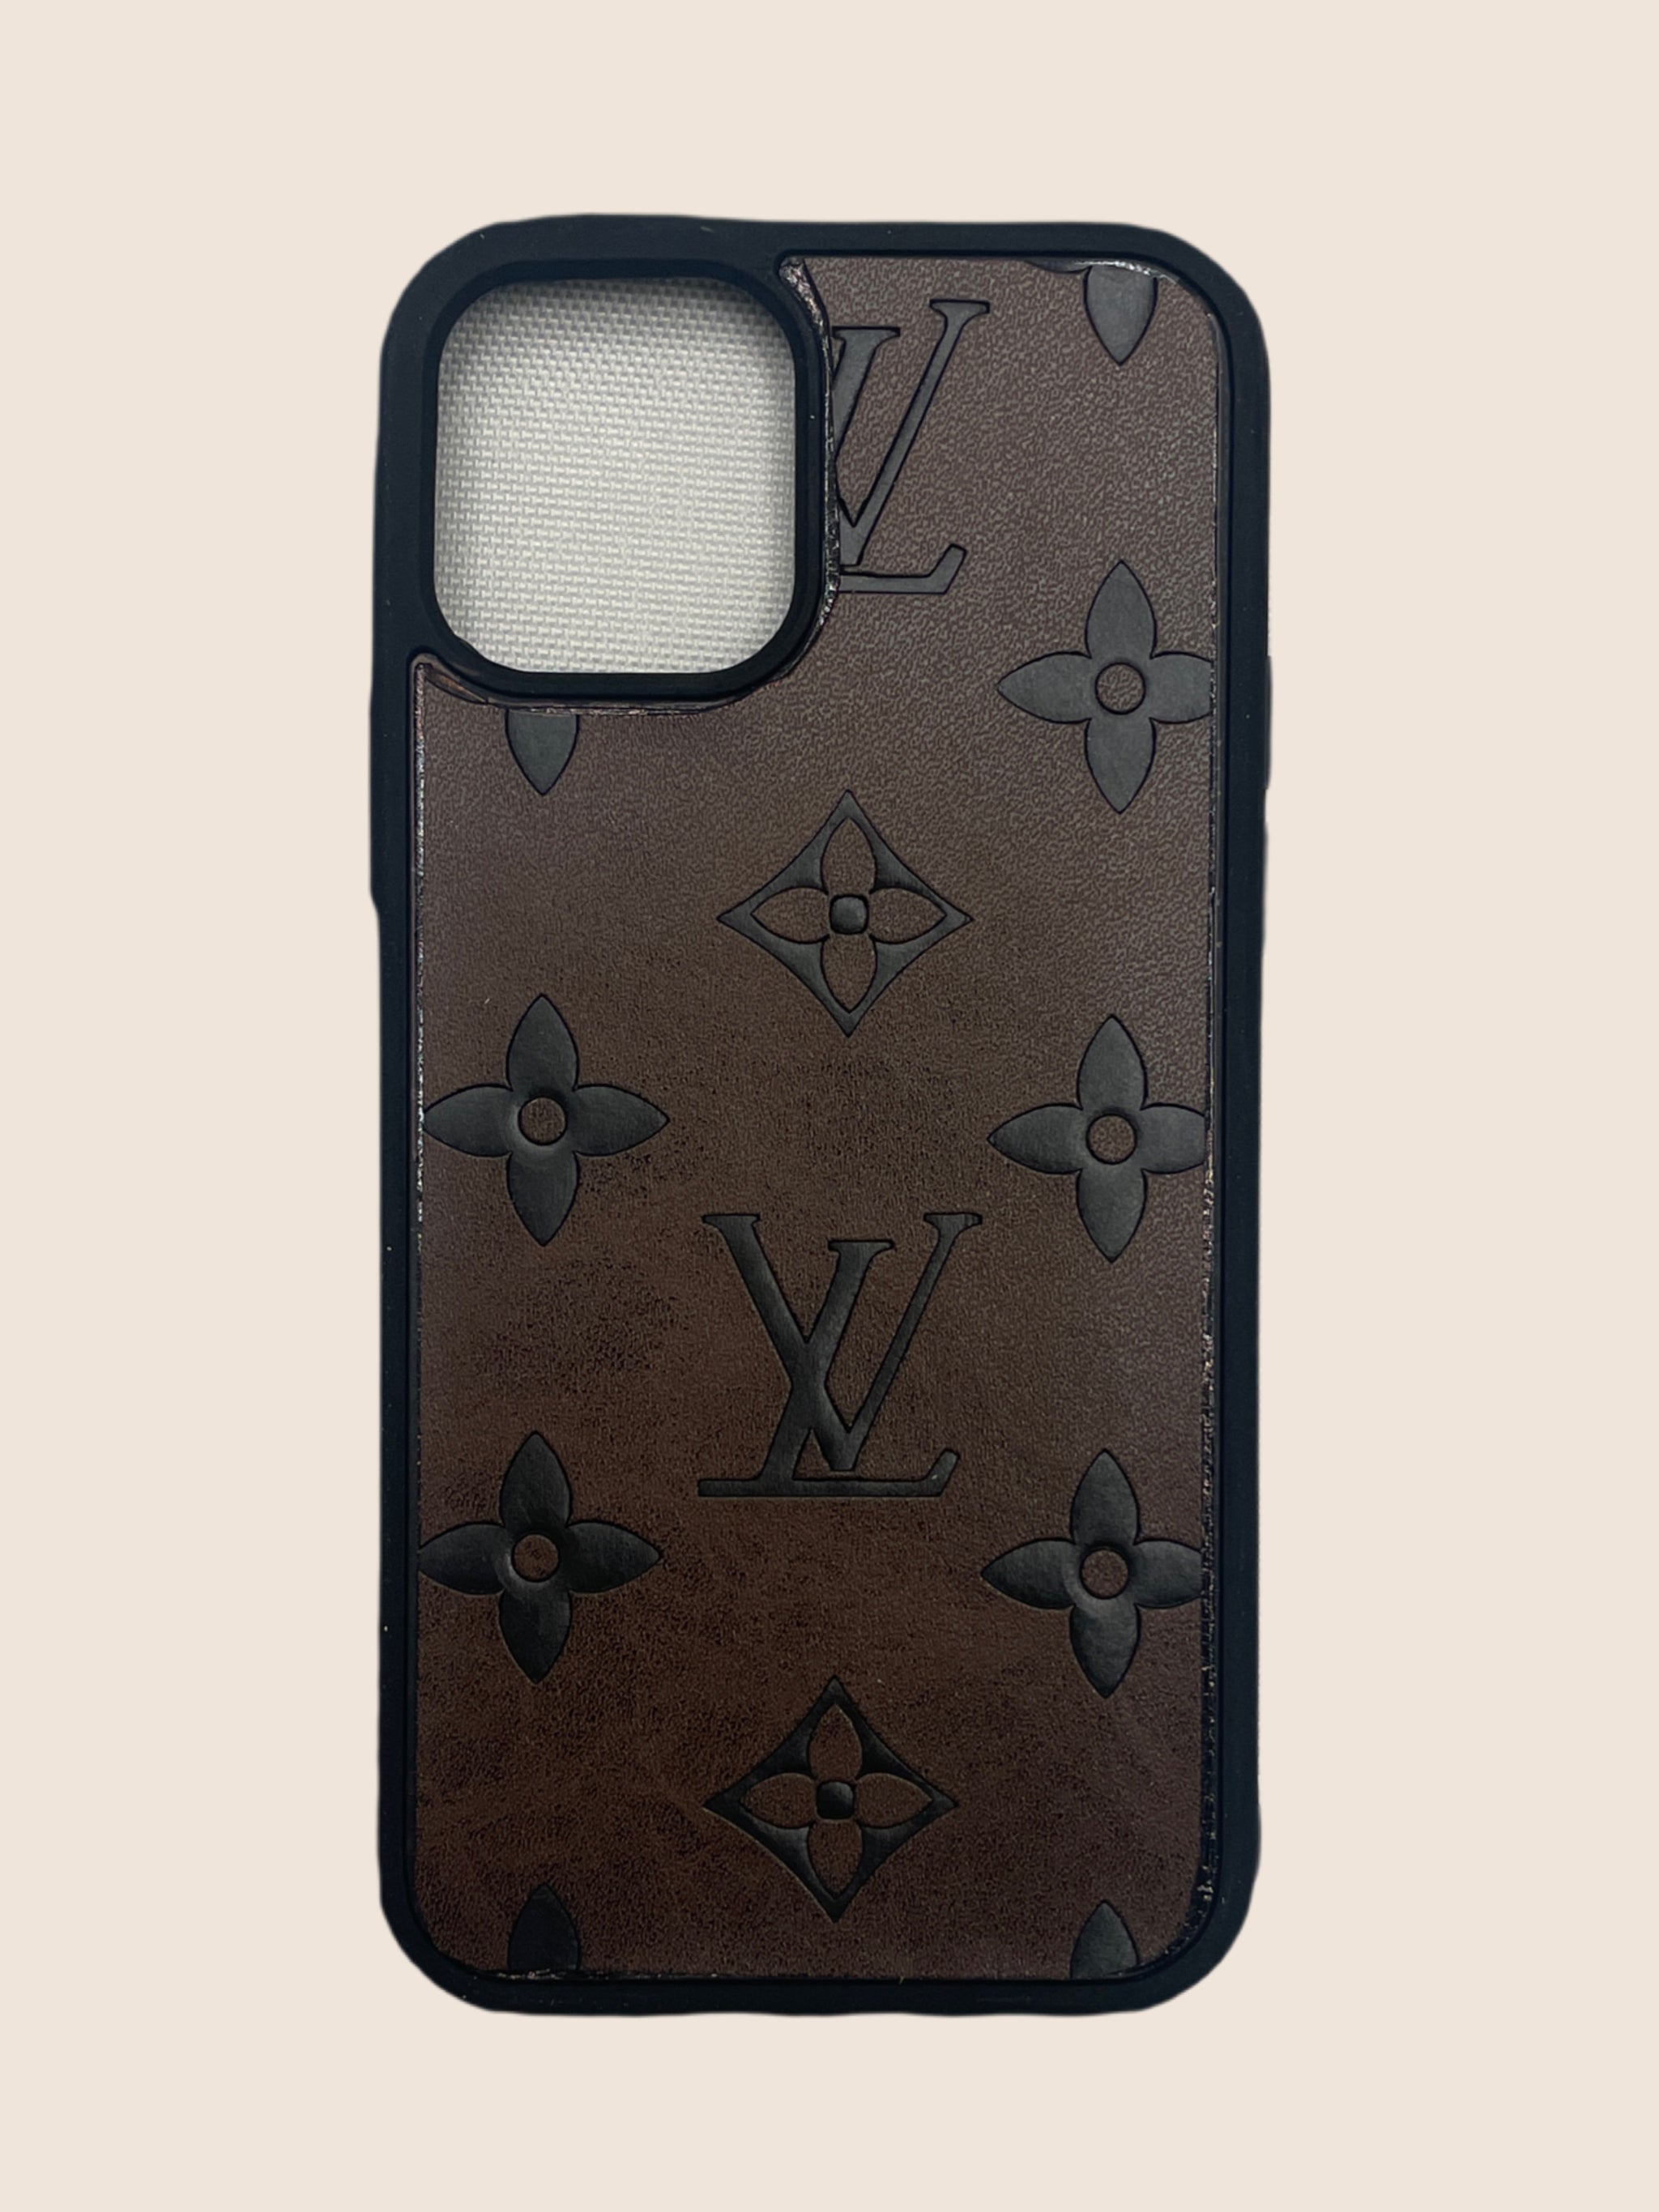 Authentic Louis Vuitton Monogram Leather Phone Case Classic Design